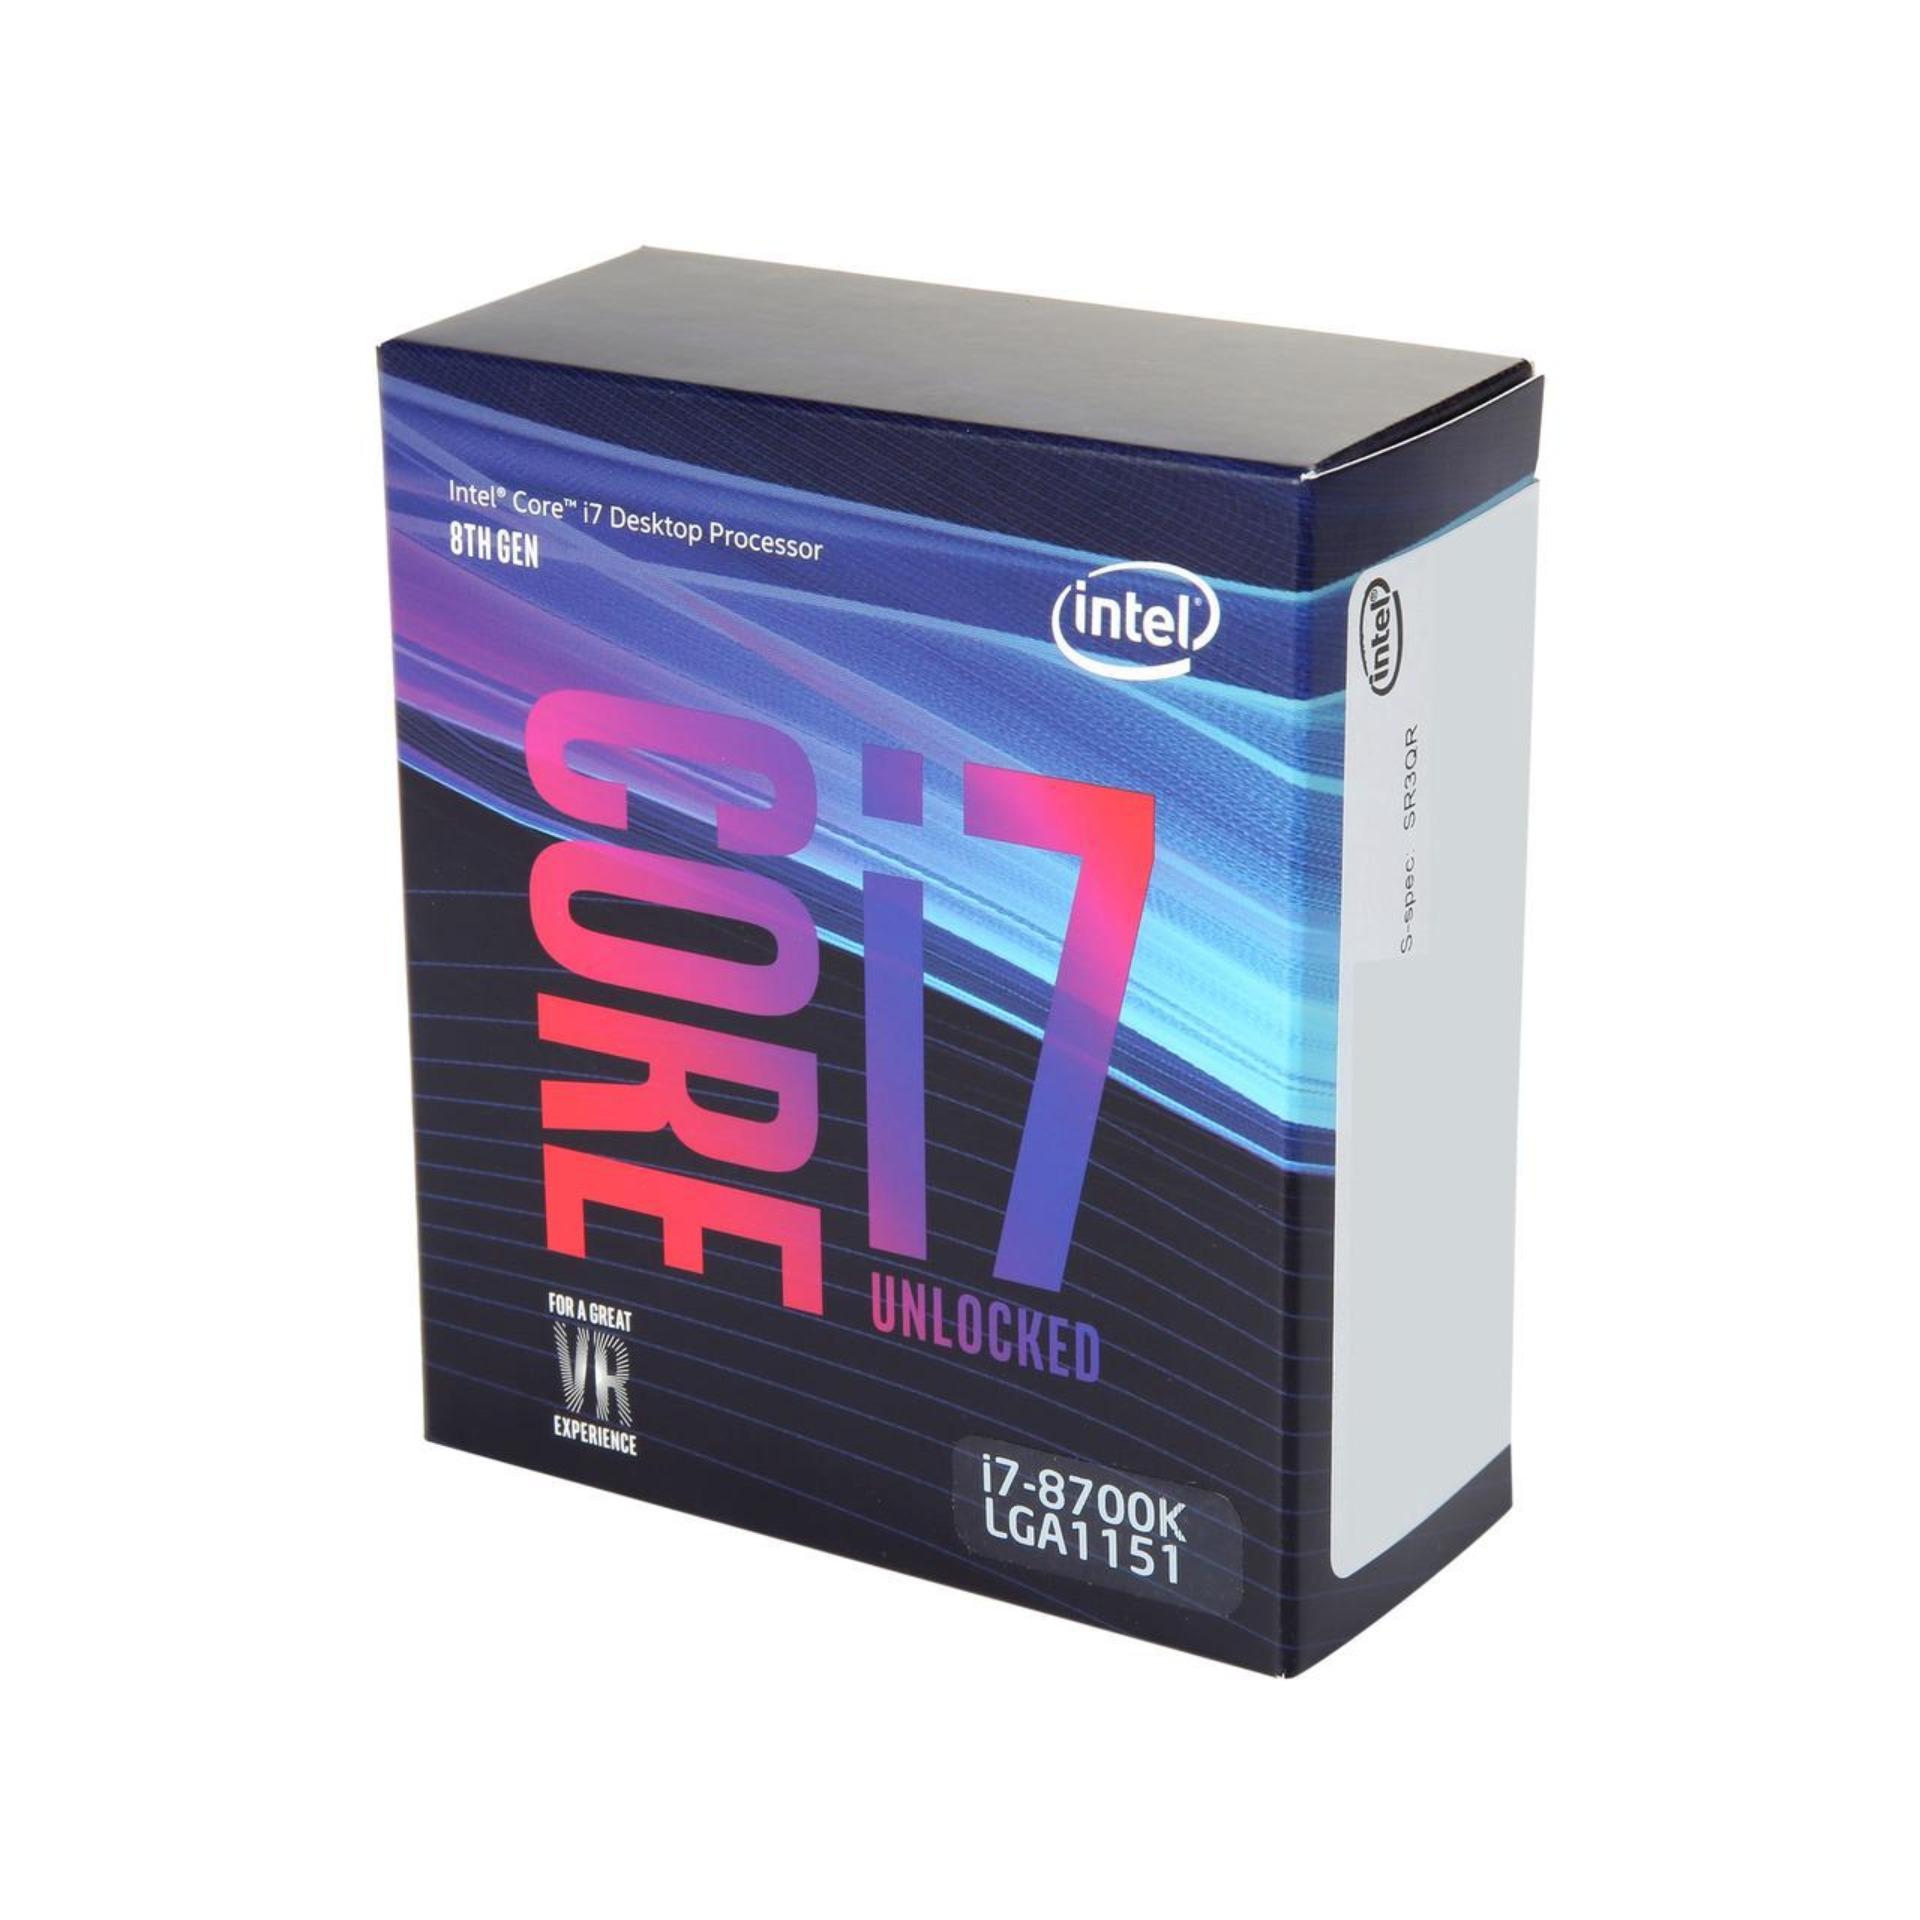 Купить core 7. Intel Core i7-8700k (Box). I7 8700. I5 8700k. Intel Core i7-8700k lga1151 v2, 6 x 3700 МГЦ.